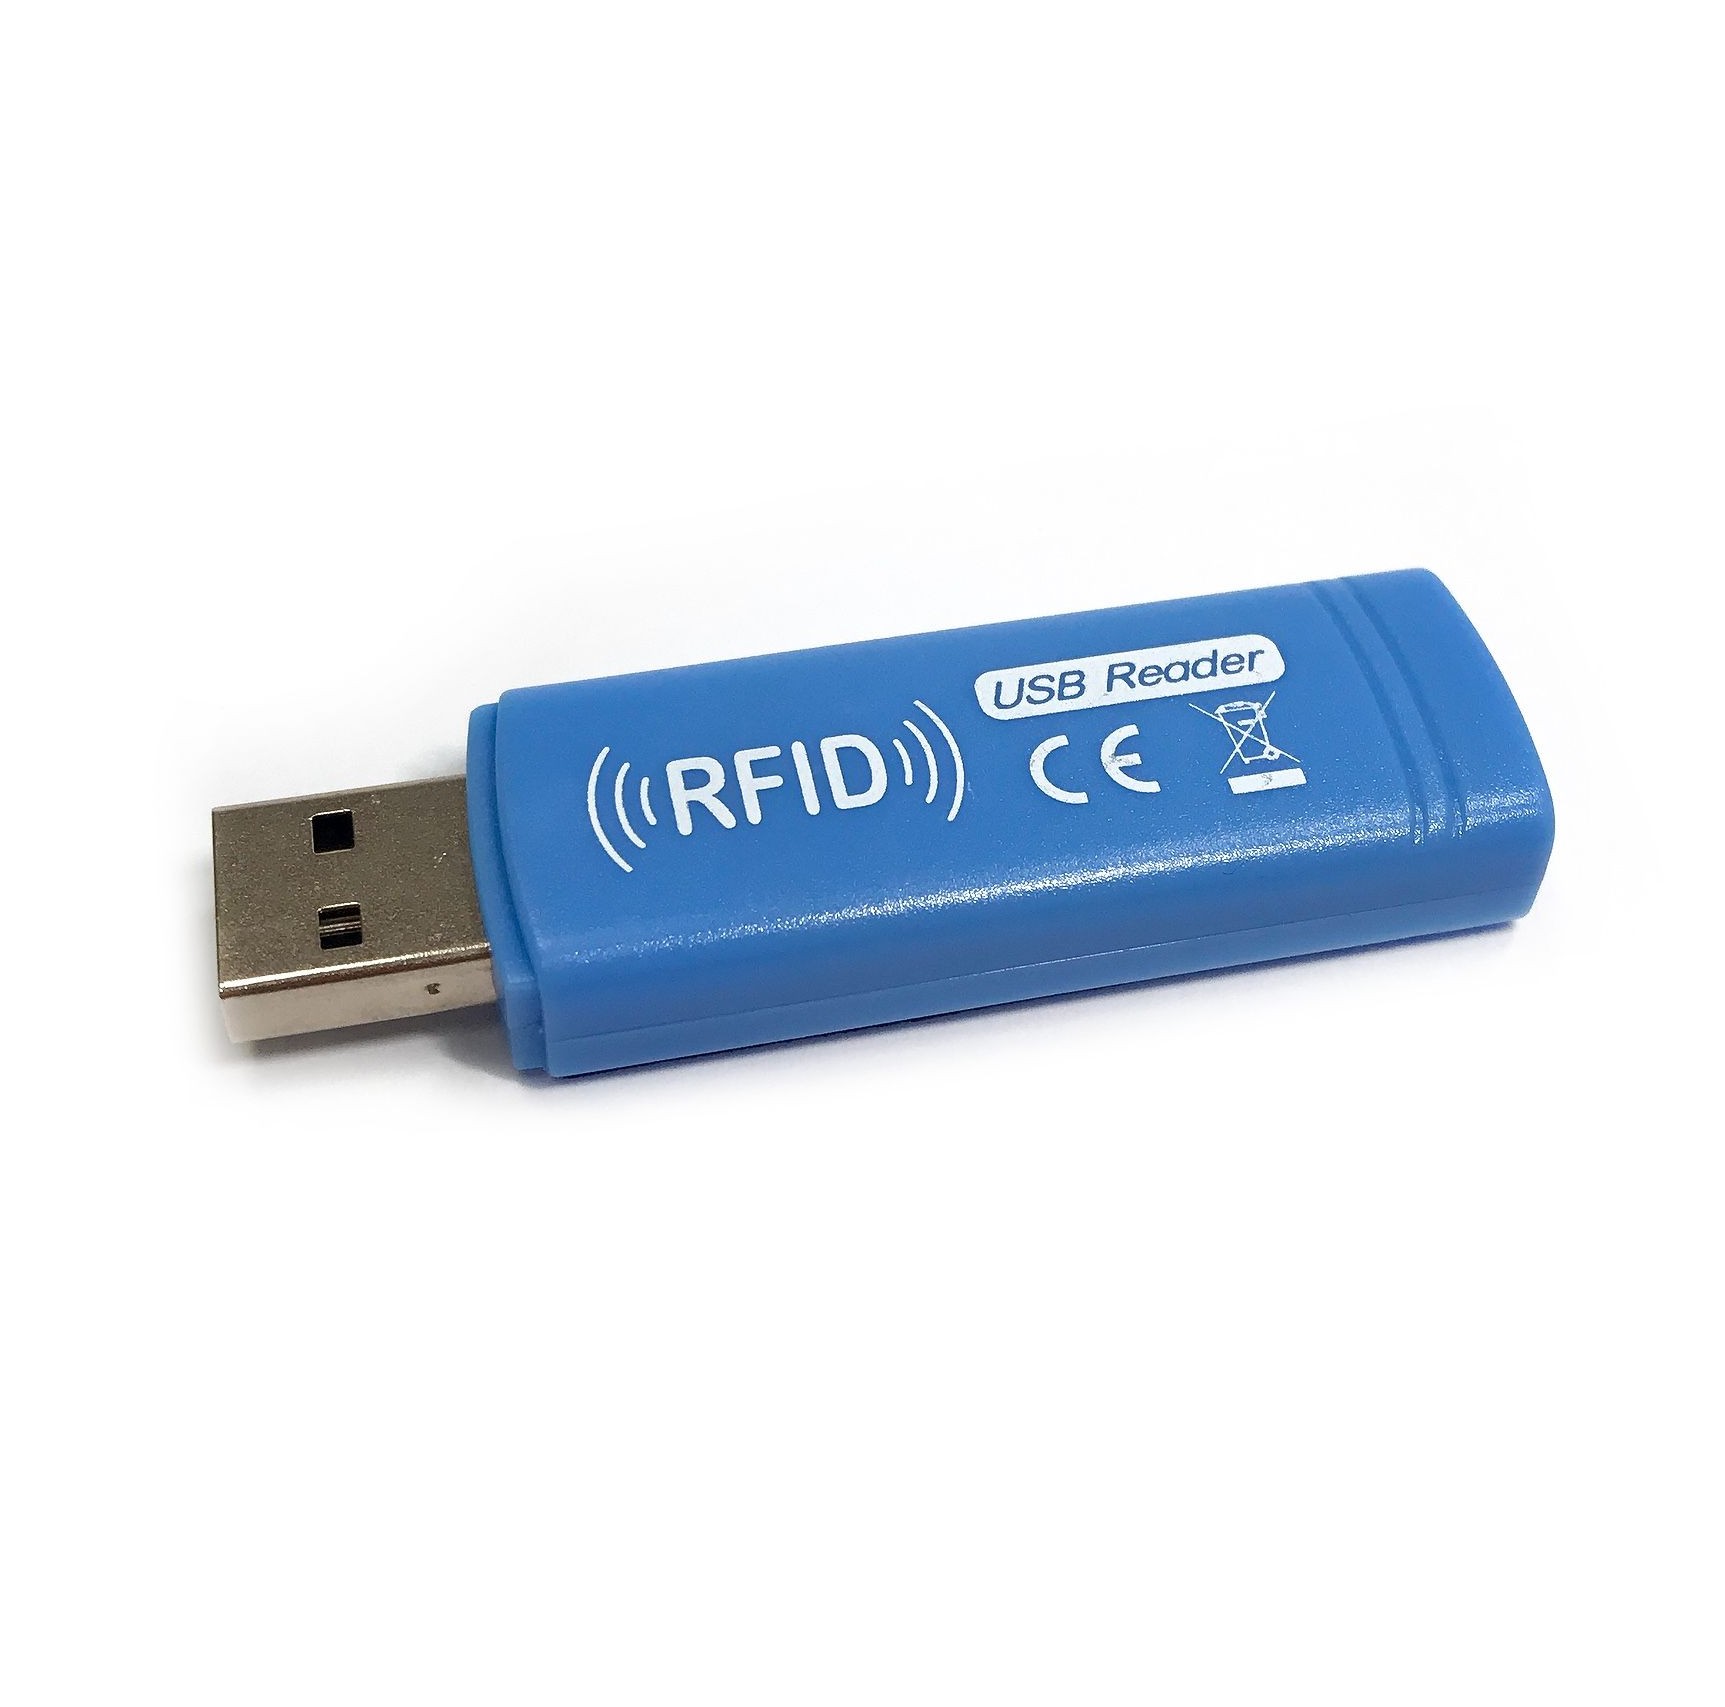 USB PEN READER 125KHz-EM compatible